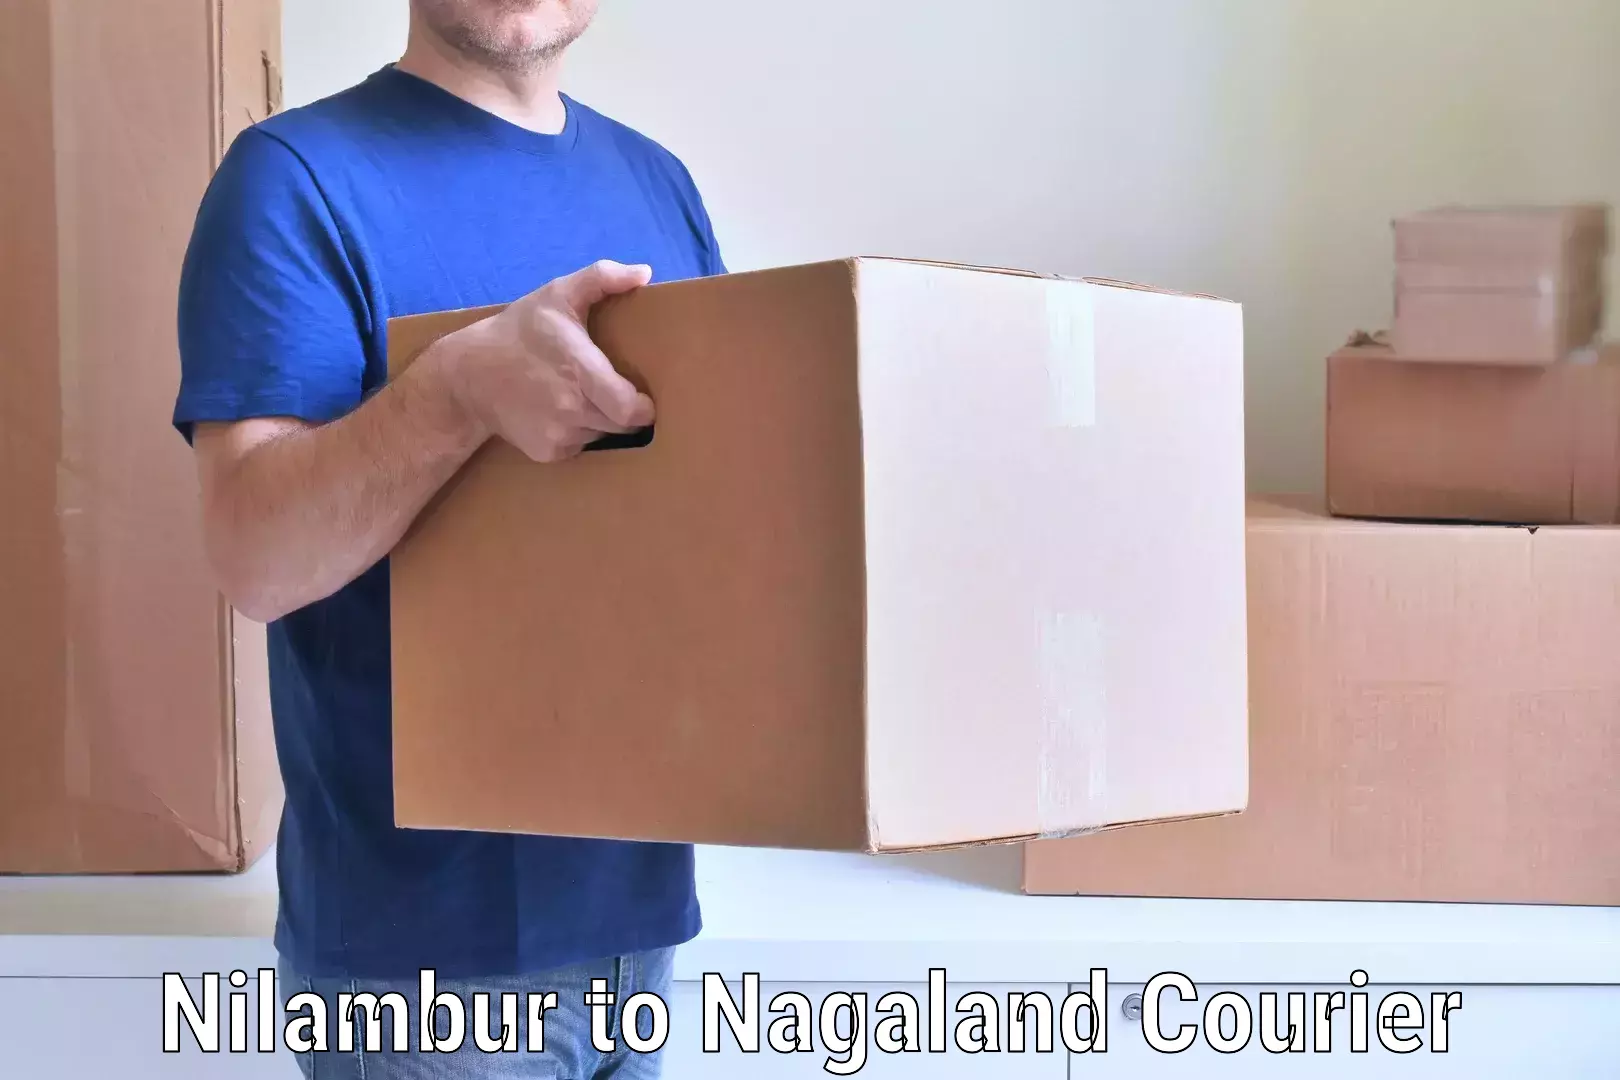 Budget-friendly movers Nilambur to Nagaland